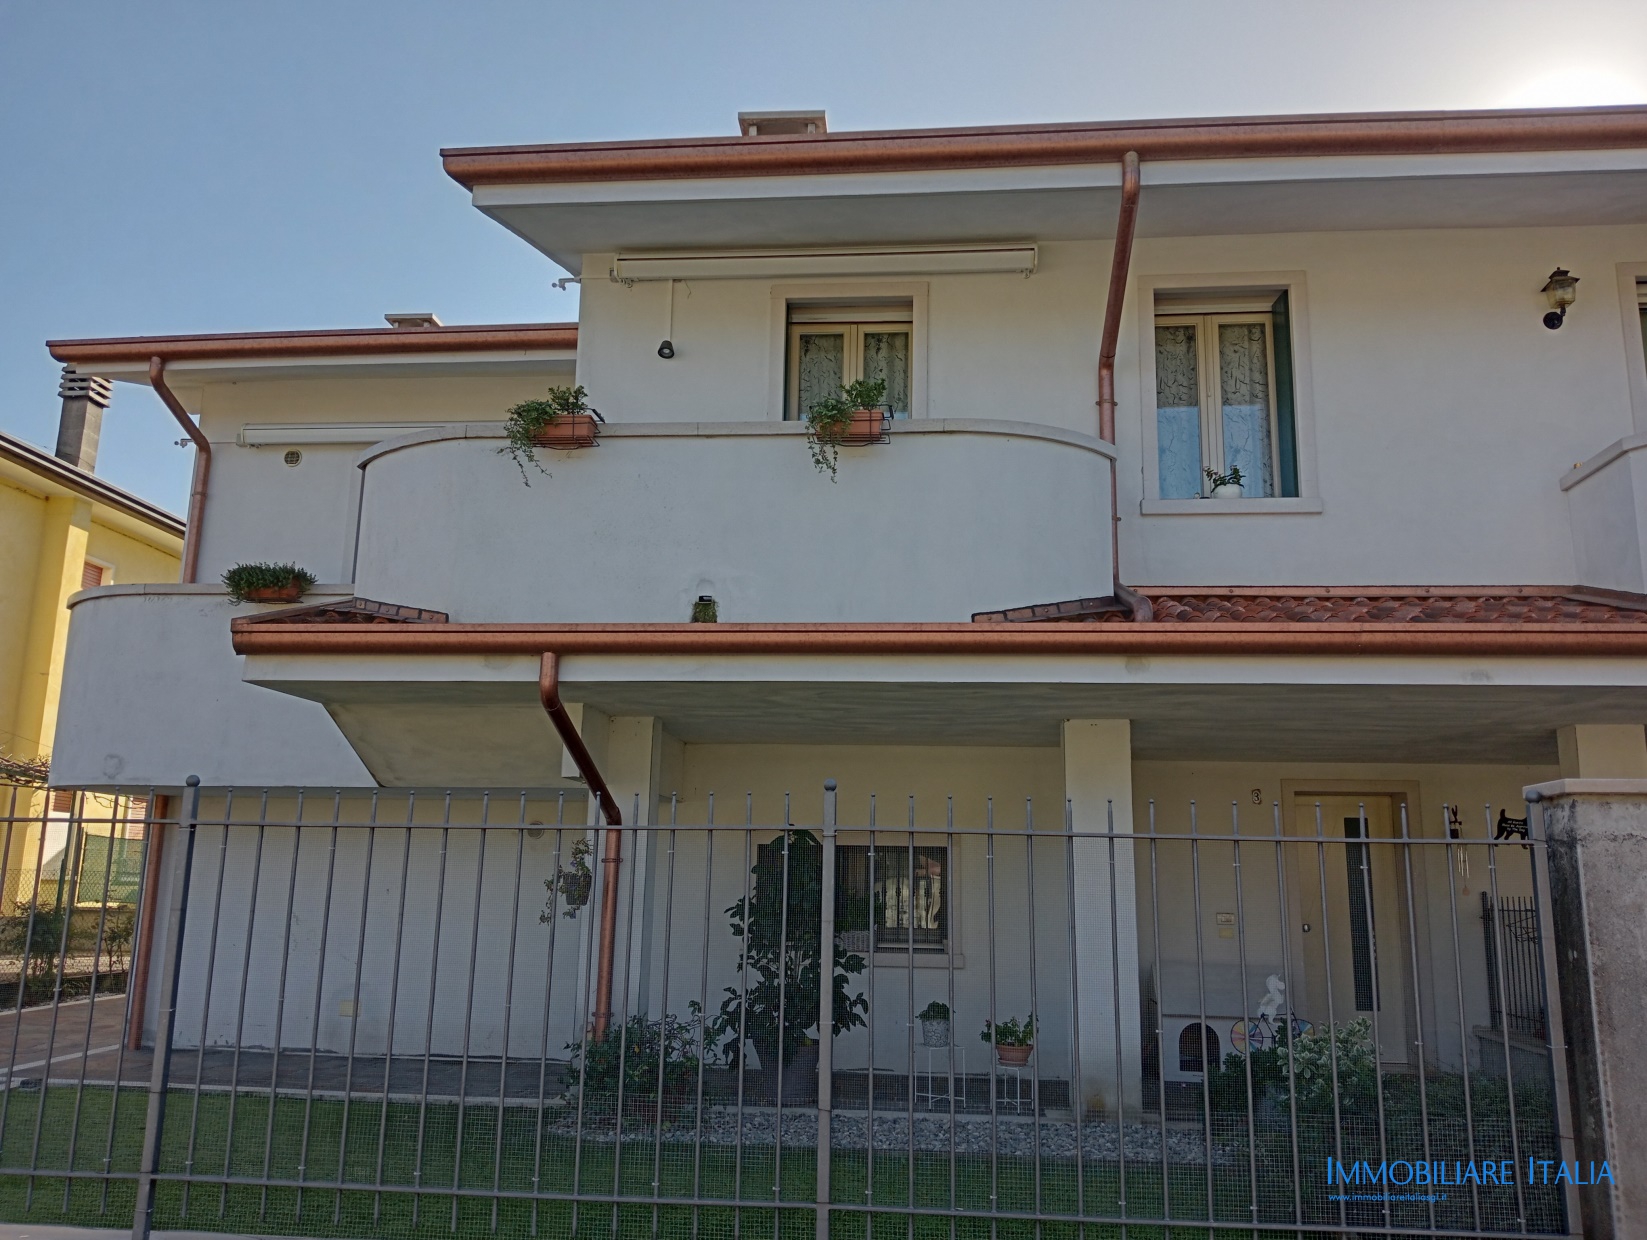 Casa semi-indipendente in via toscanini a San Giovanni Lupatoto